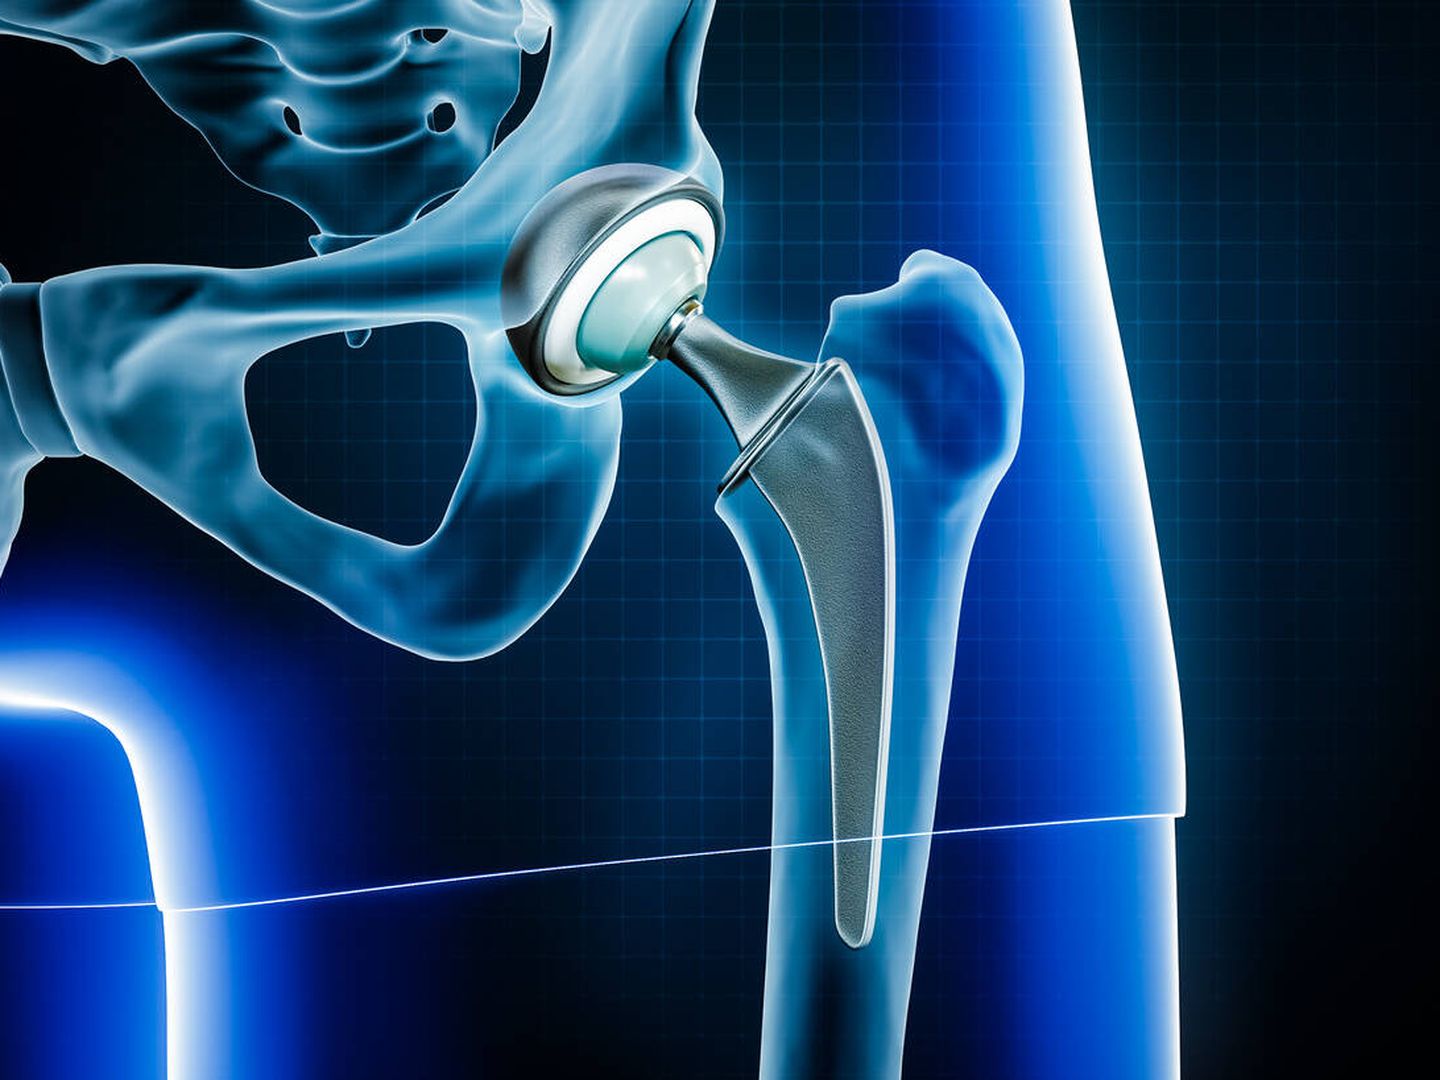 La radiografía muestra la prótesis de cadera. (iStock)